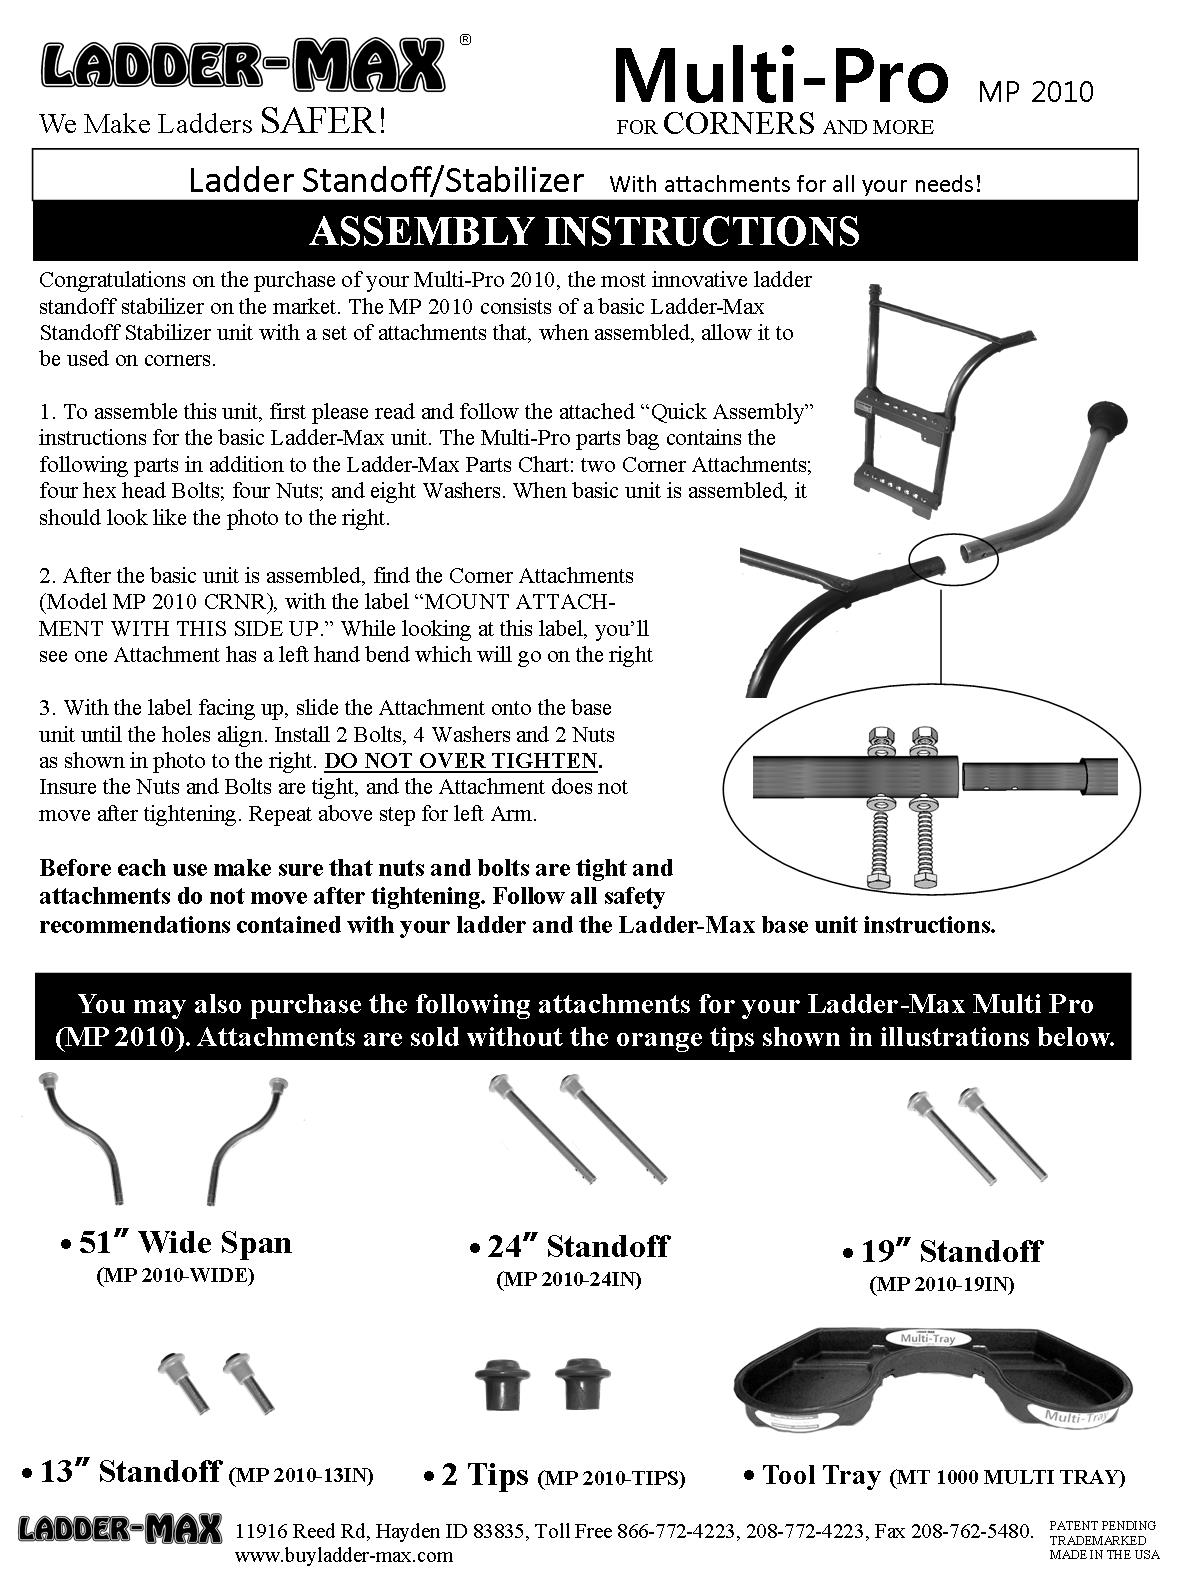 multi-pro-assembly-instructions-page-1.jpg